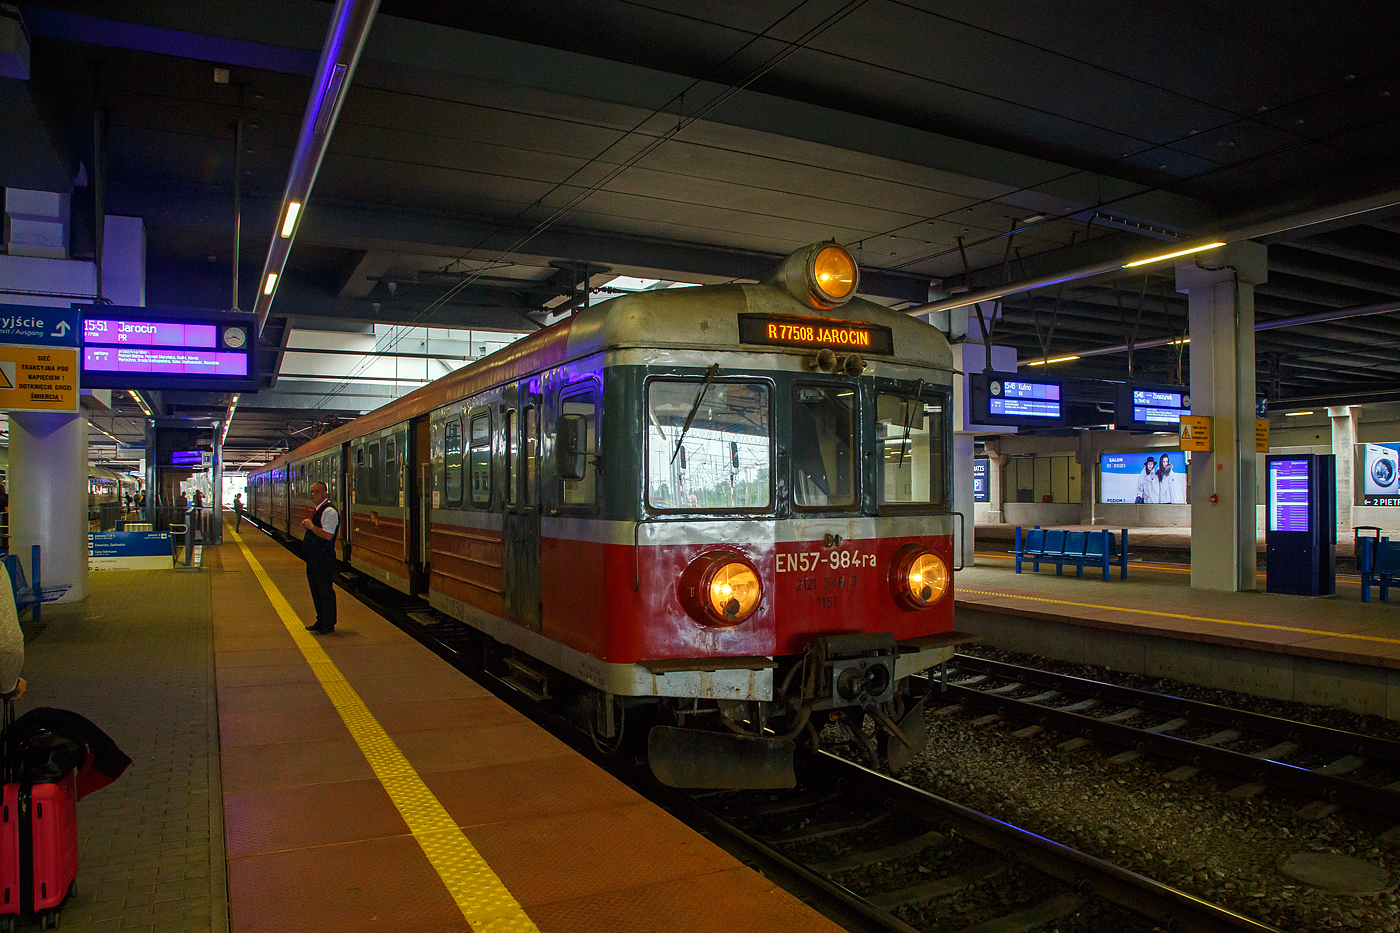 Der Elektrotriebzug EN57-984 (94 51 2 121 550-9 PL-PREG 1151 / 94 51 2 121 549-1 PL-PREG und 94 51 2 121 548-3 PL-PREG) ein dreiteiliger Triebzug vom Typ Pafawag 5B/6B der POLREGIO (Przewozy Regionalne) steht am 24 Juni 2017 im Hauptbahnhof Posen (Poznań Główny), als R77508 nach Jarocin, zur Abfahrt bereit.